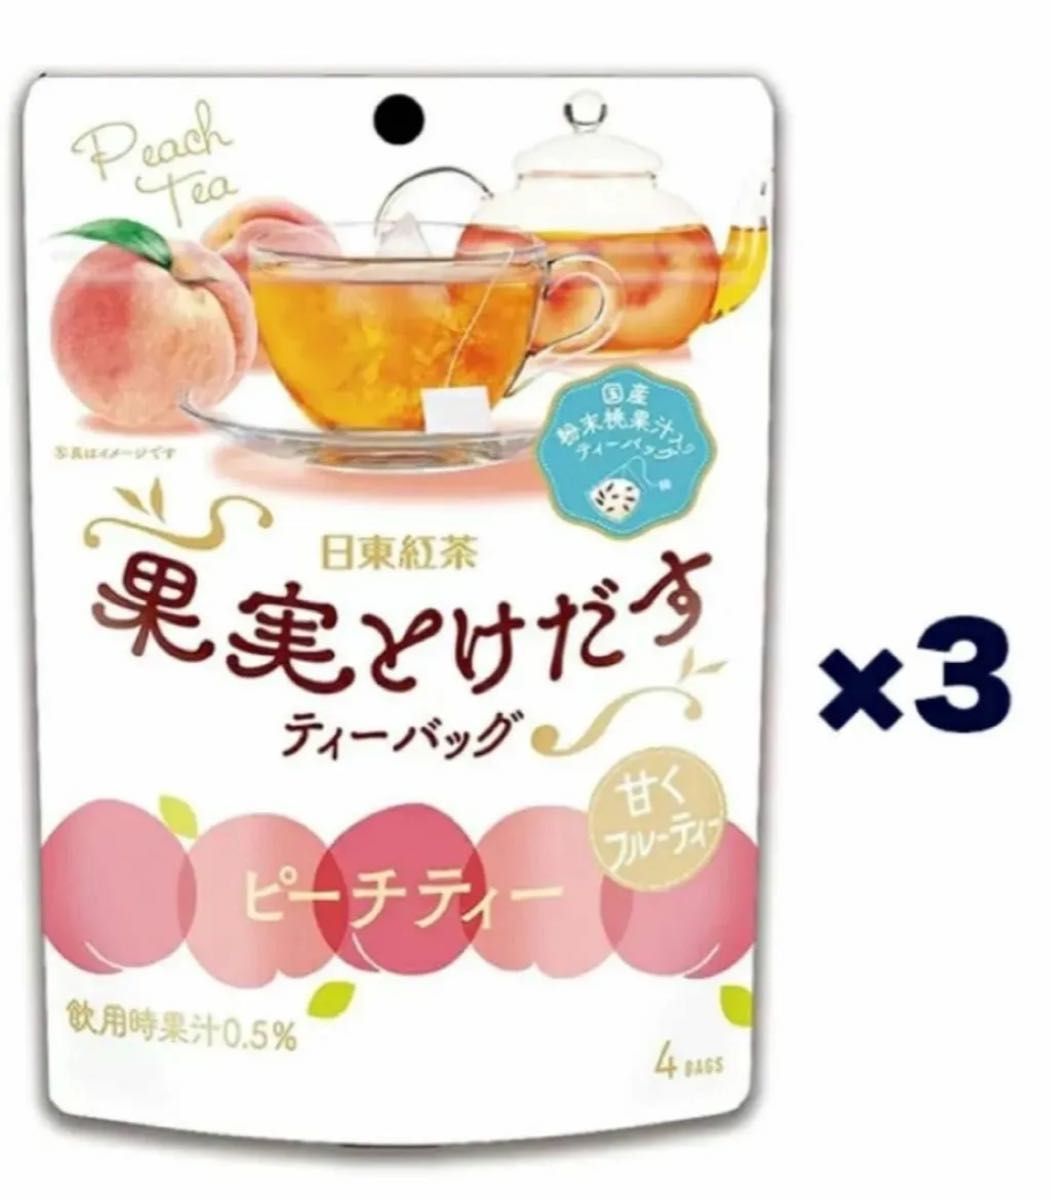 三井農林 日東紅茶 果実とけだすティーバッグピーチティー 4袋×3個